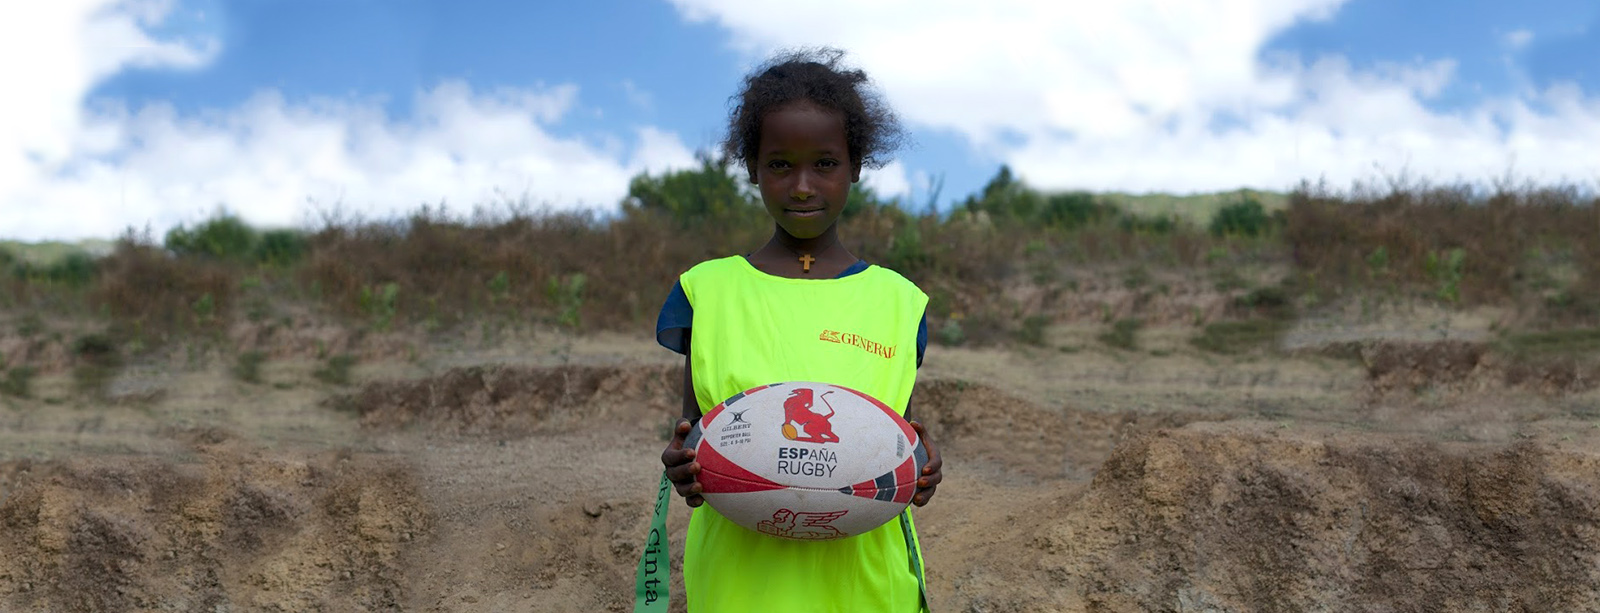 El rugby español viaja a Etiopía